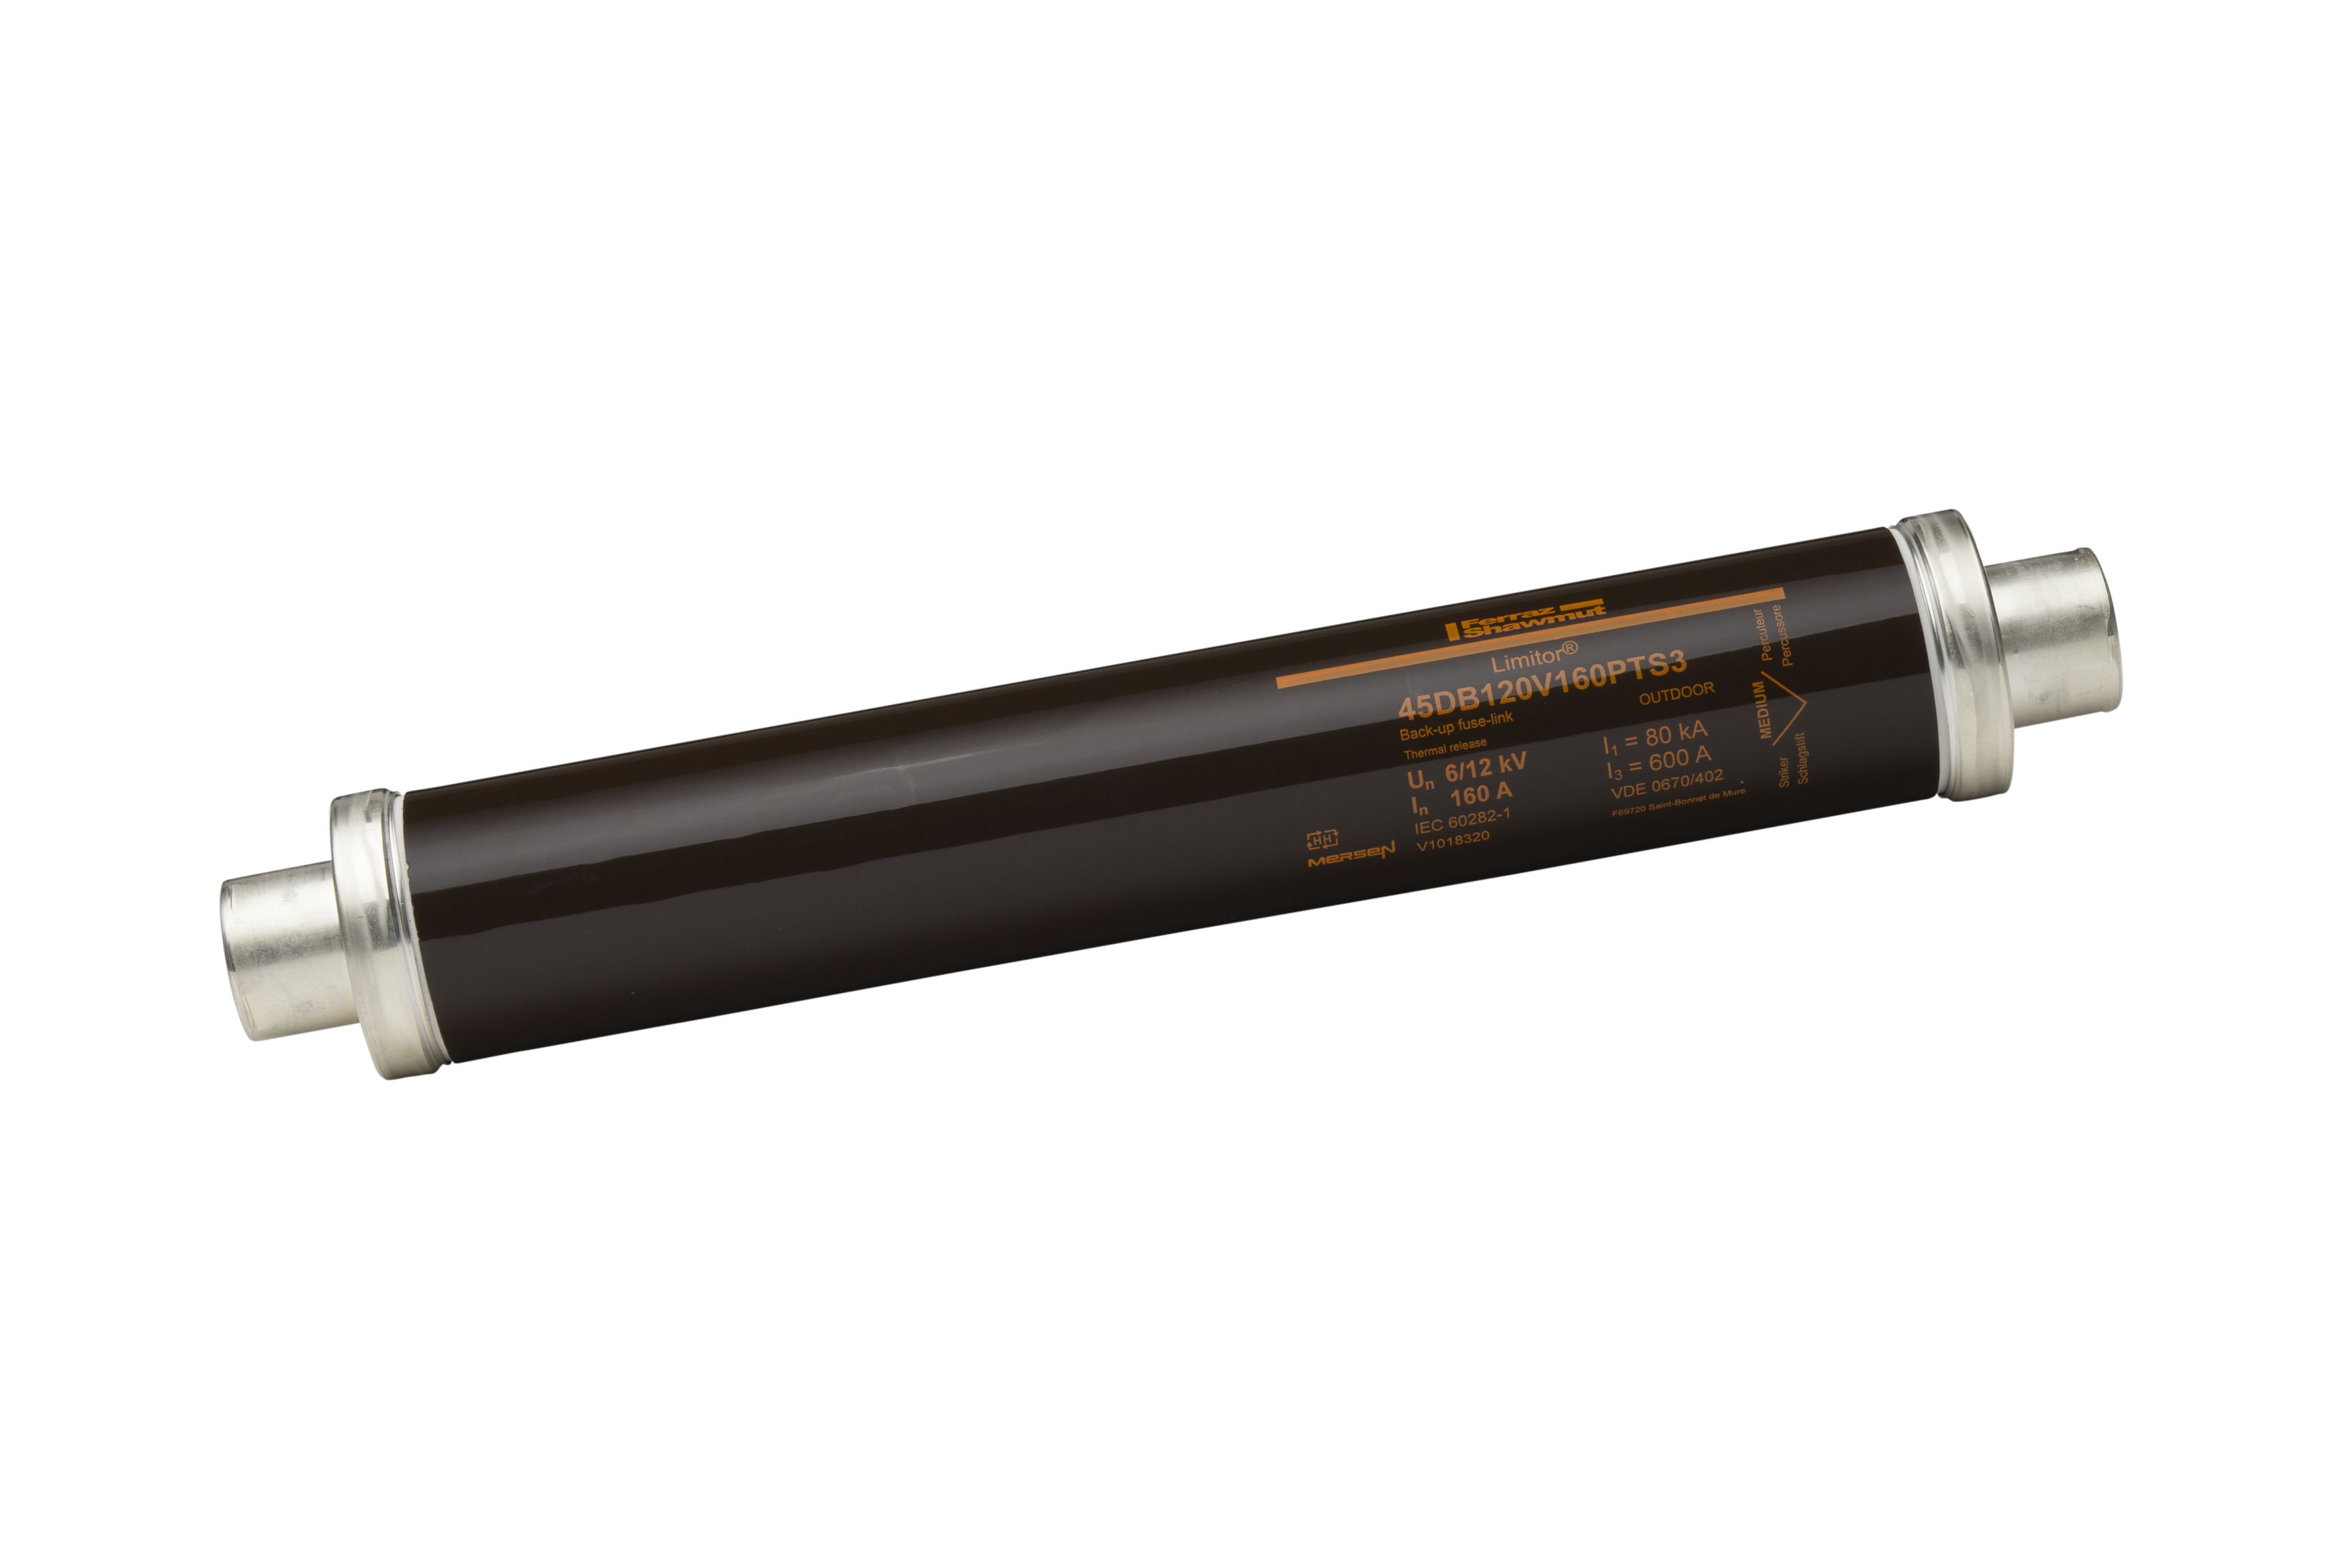 V1018320 - HV fuse DIN 43625, 12kV, 160A, 442mm, 45mm, thermal striker